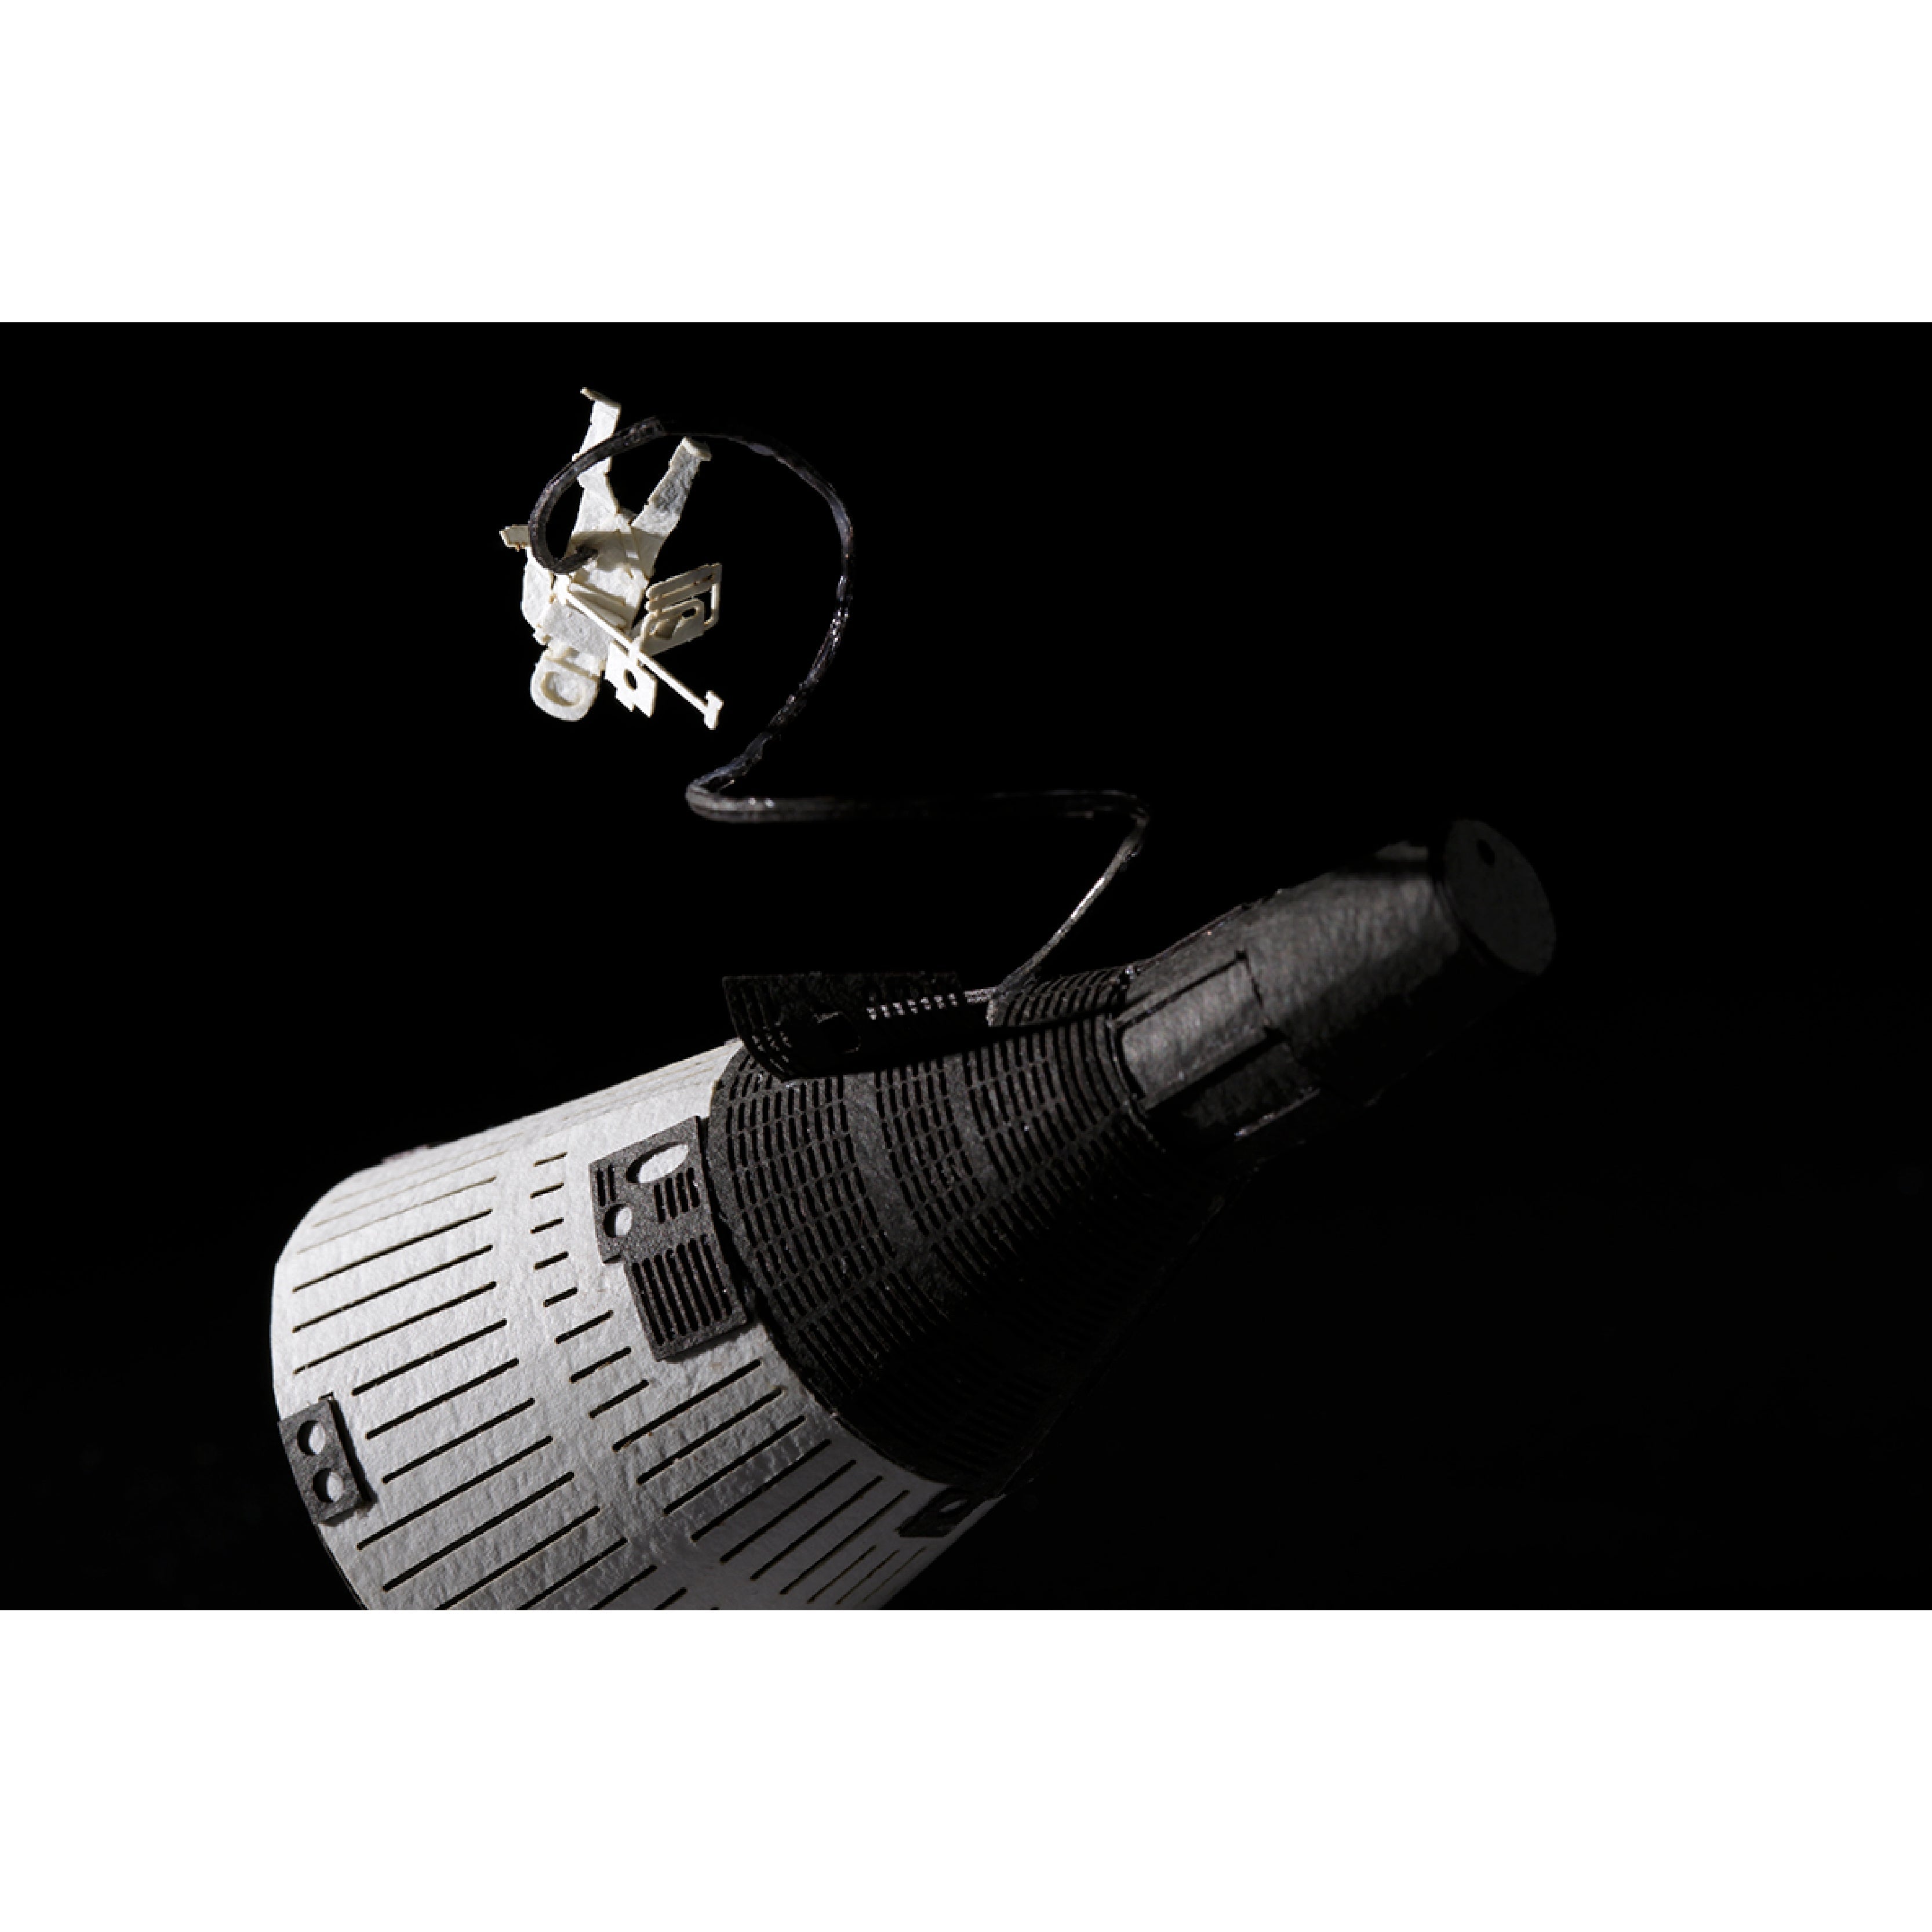 No.56 Gemini Spaceship + Spacewalk